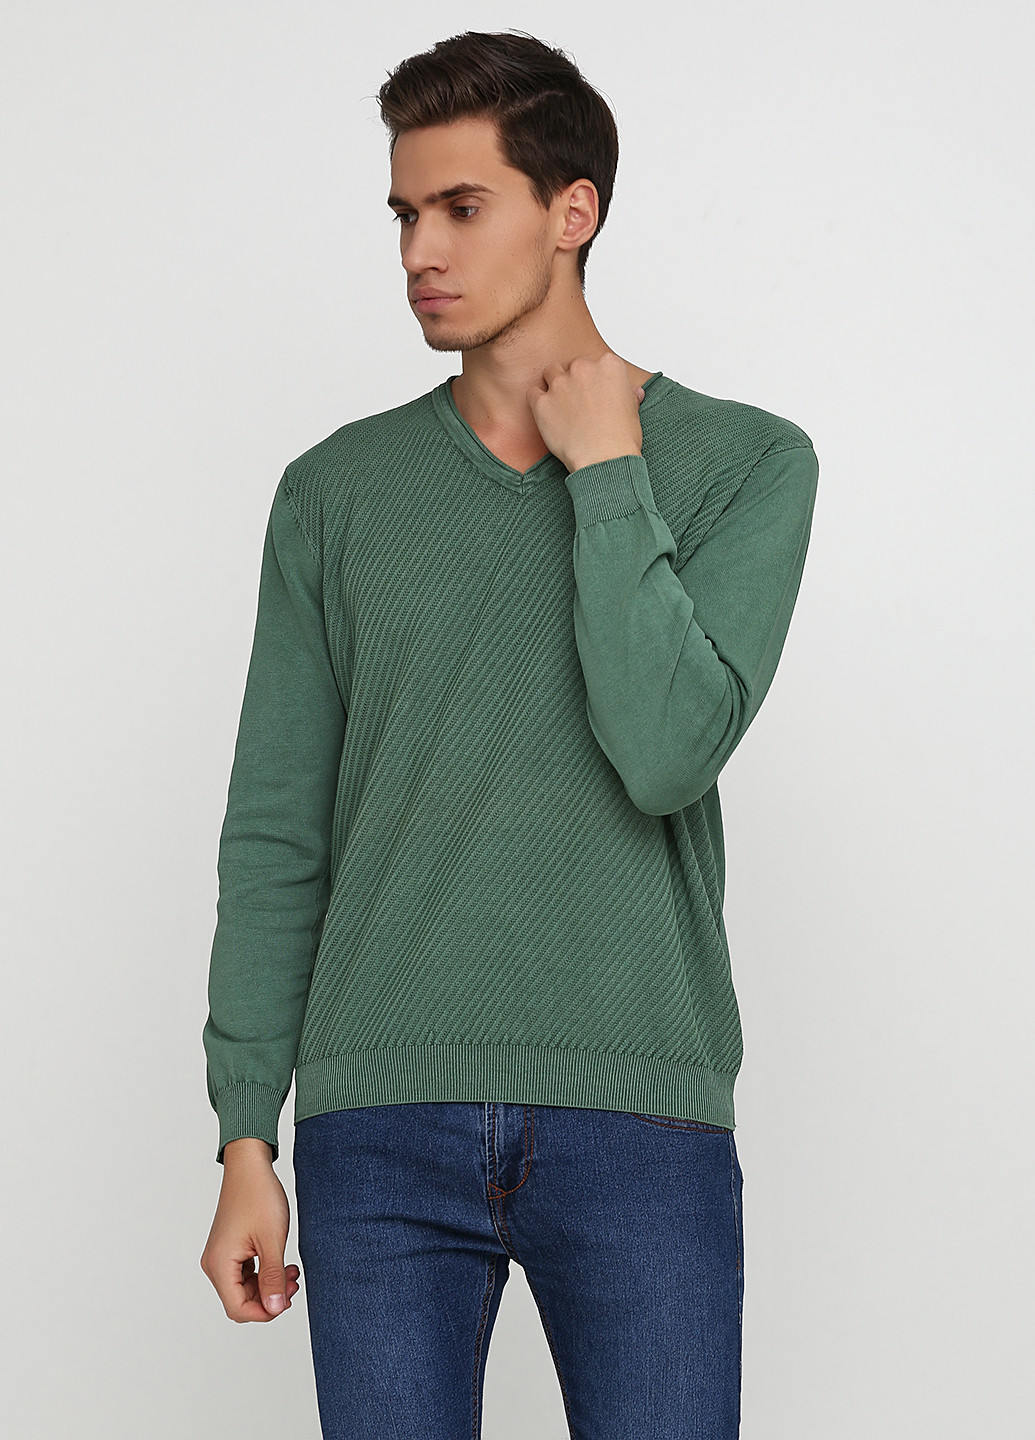 Зеленый демисезонный пуловер пуловер Cashmere Company